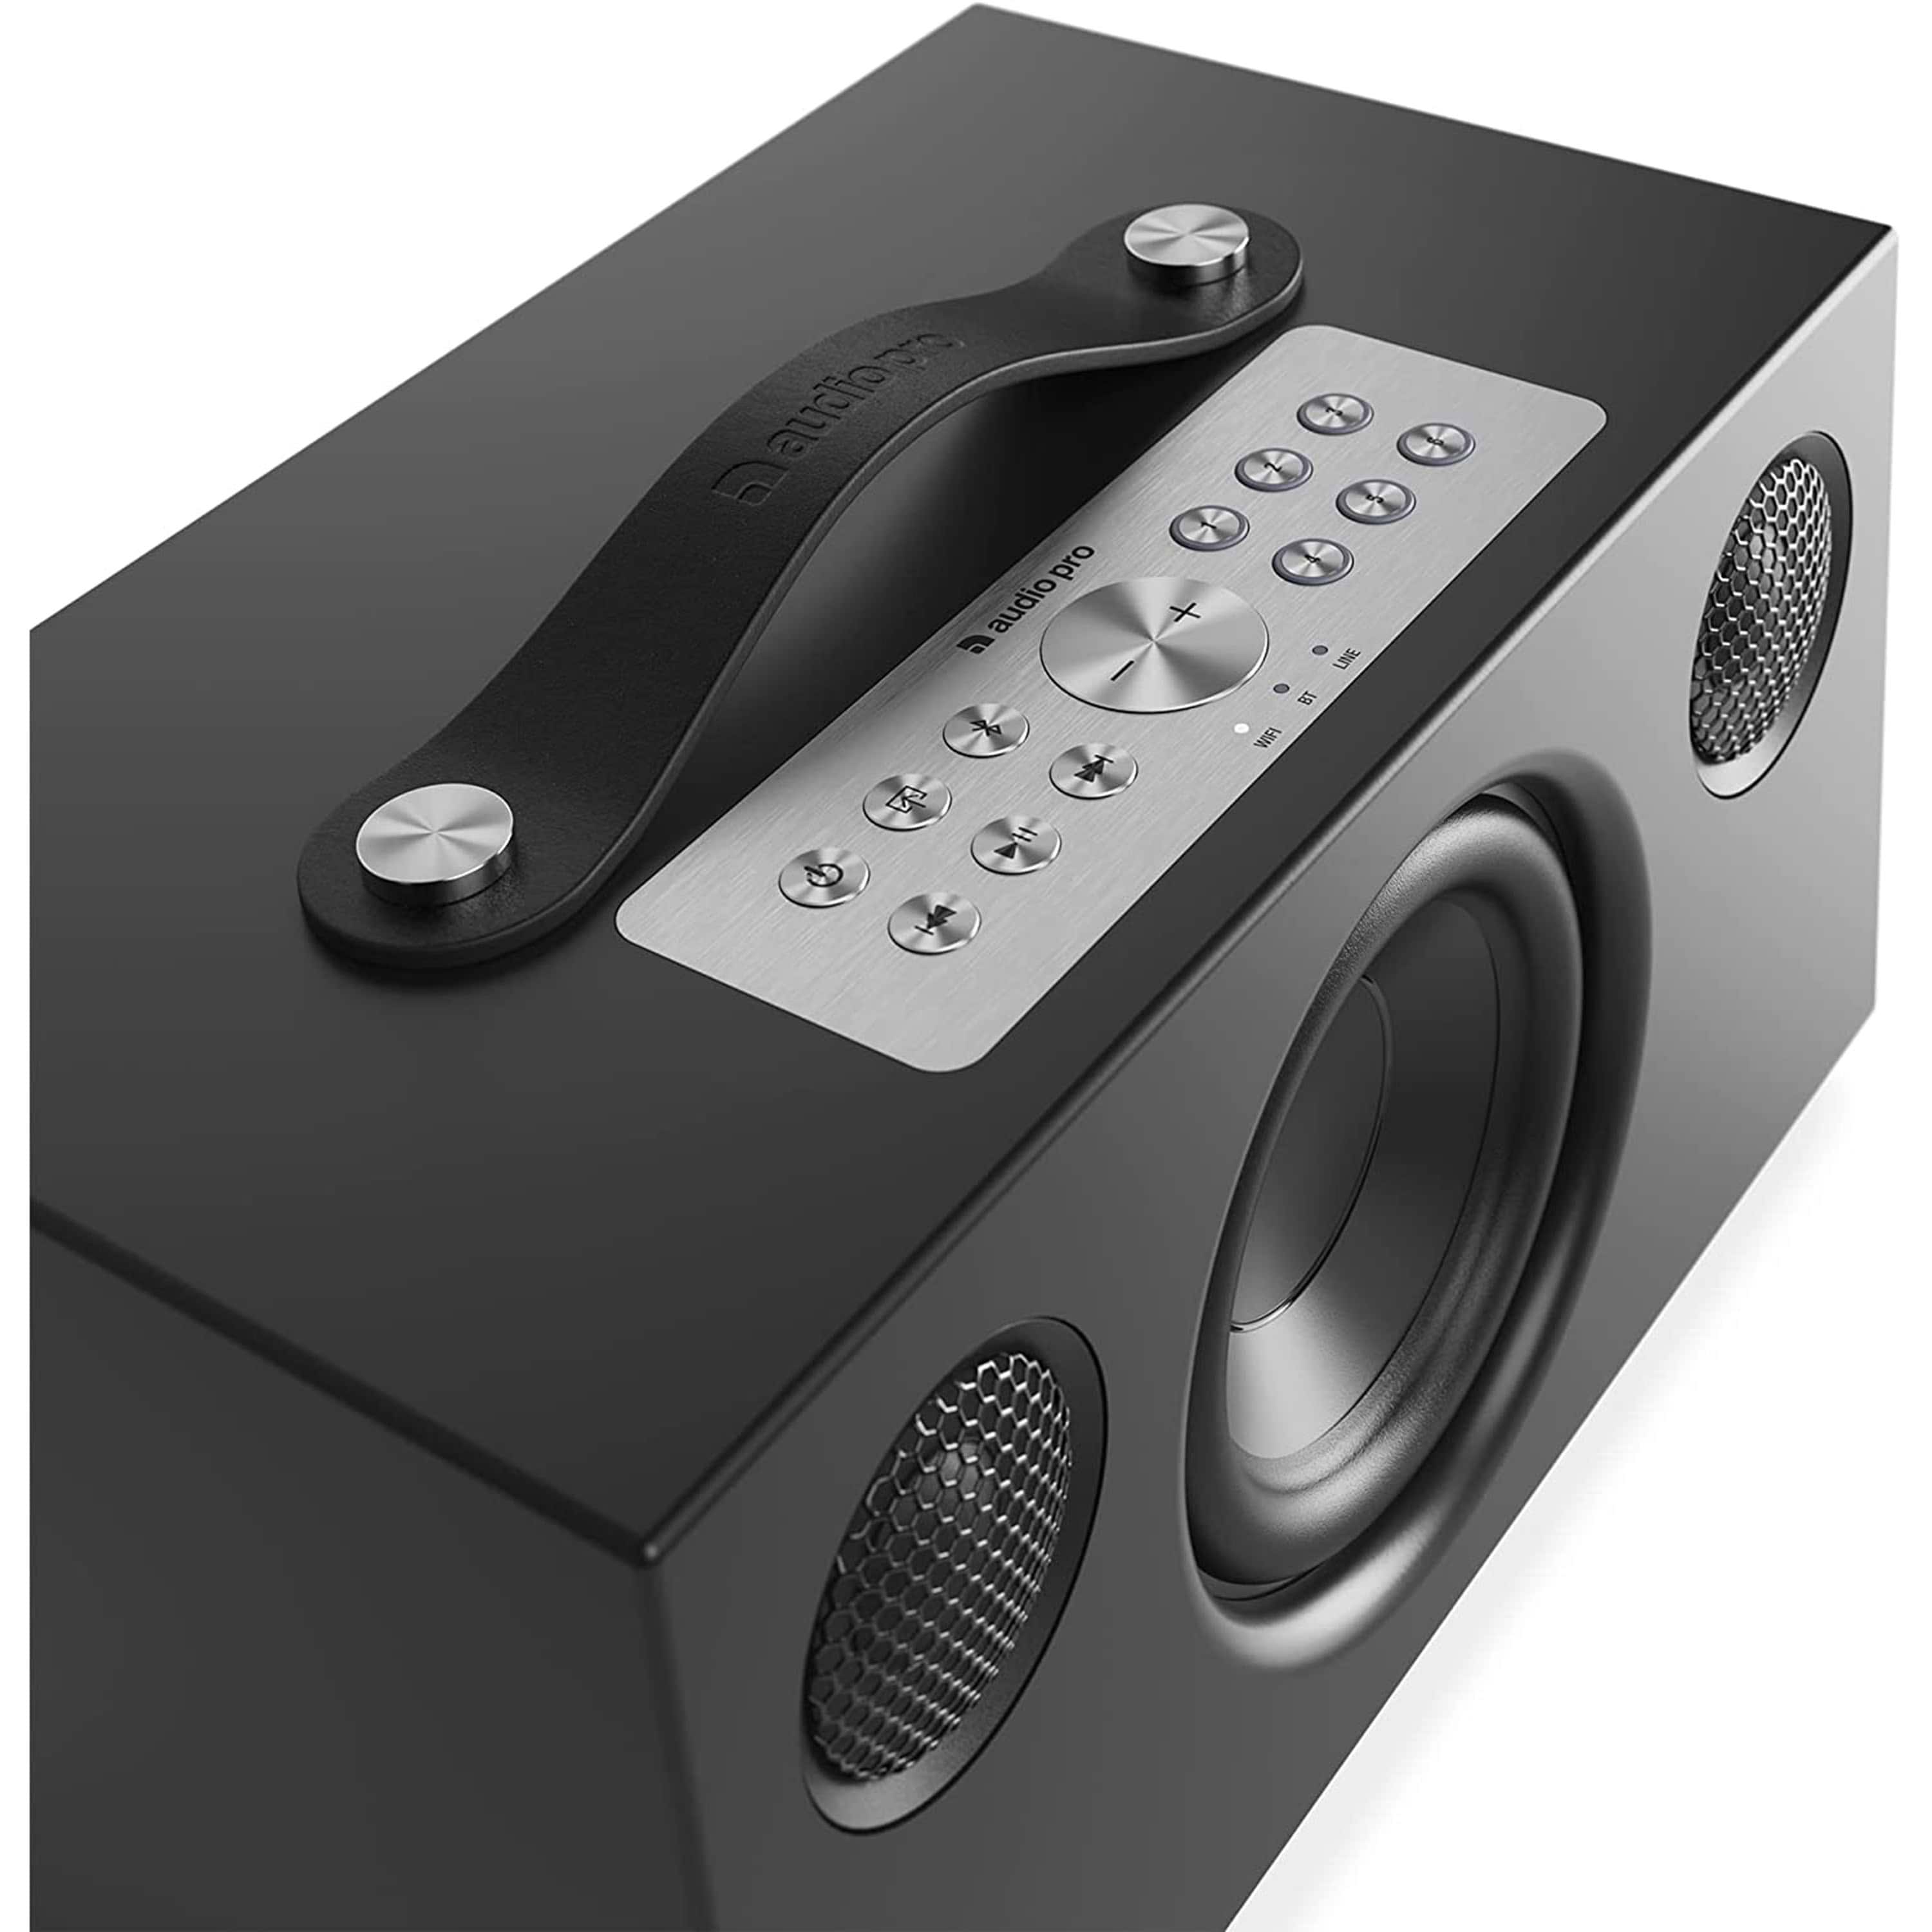 רמקול  Audio Pro Addon C5 Mkii - צבע שחור שנתיים אחריות ע